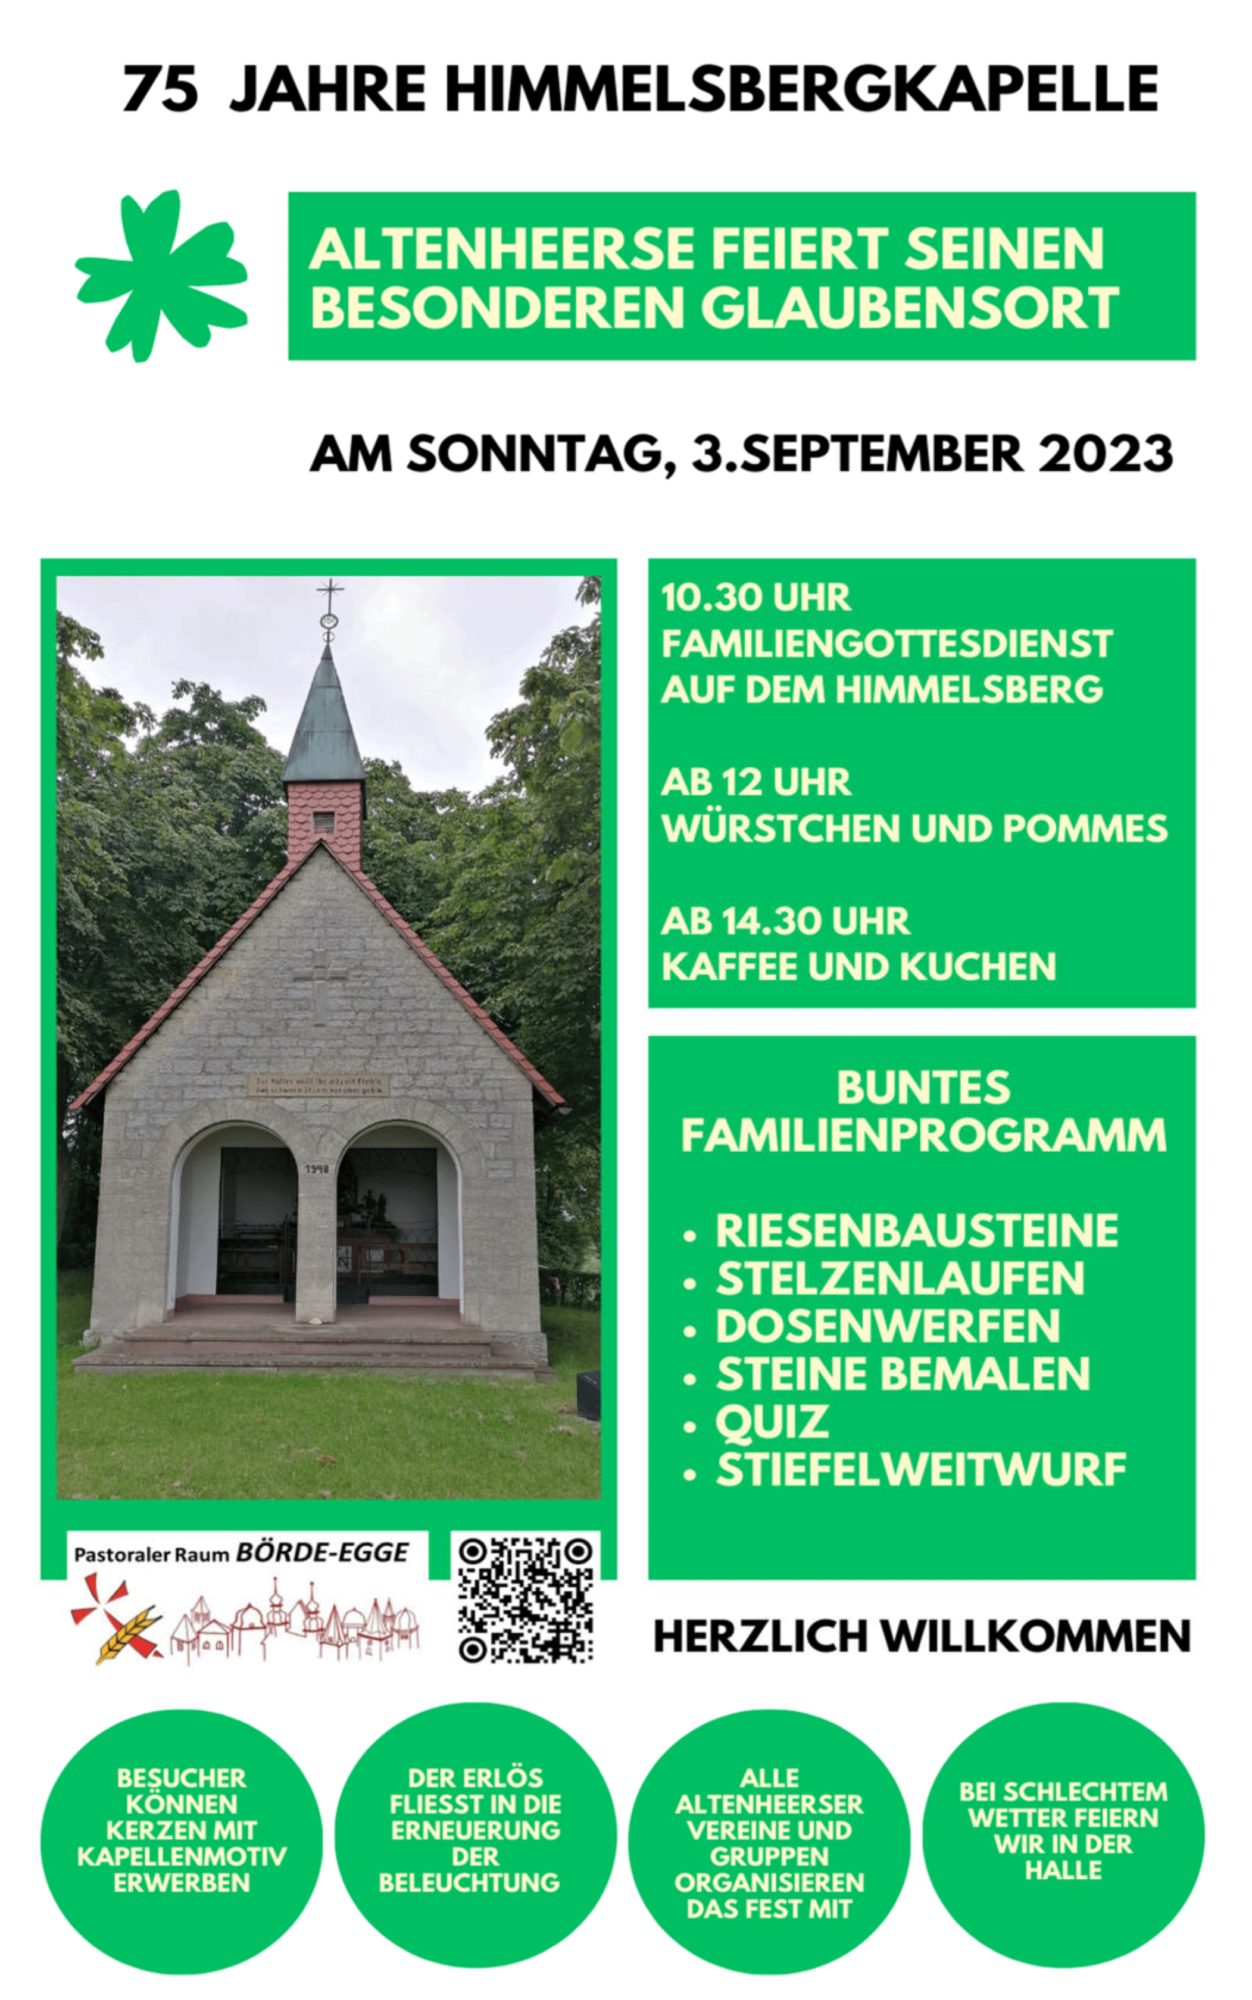 Himmelsbergkapelle wird 75 Jahre alt